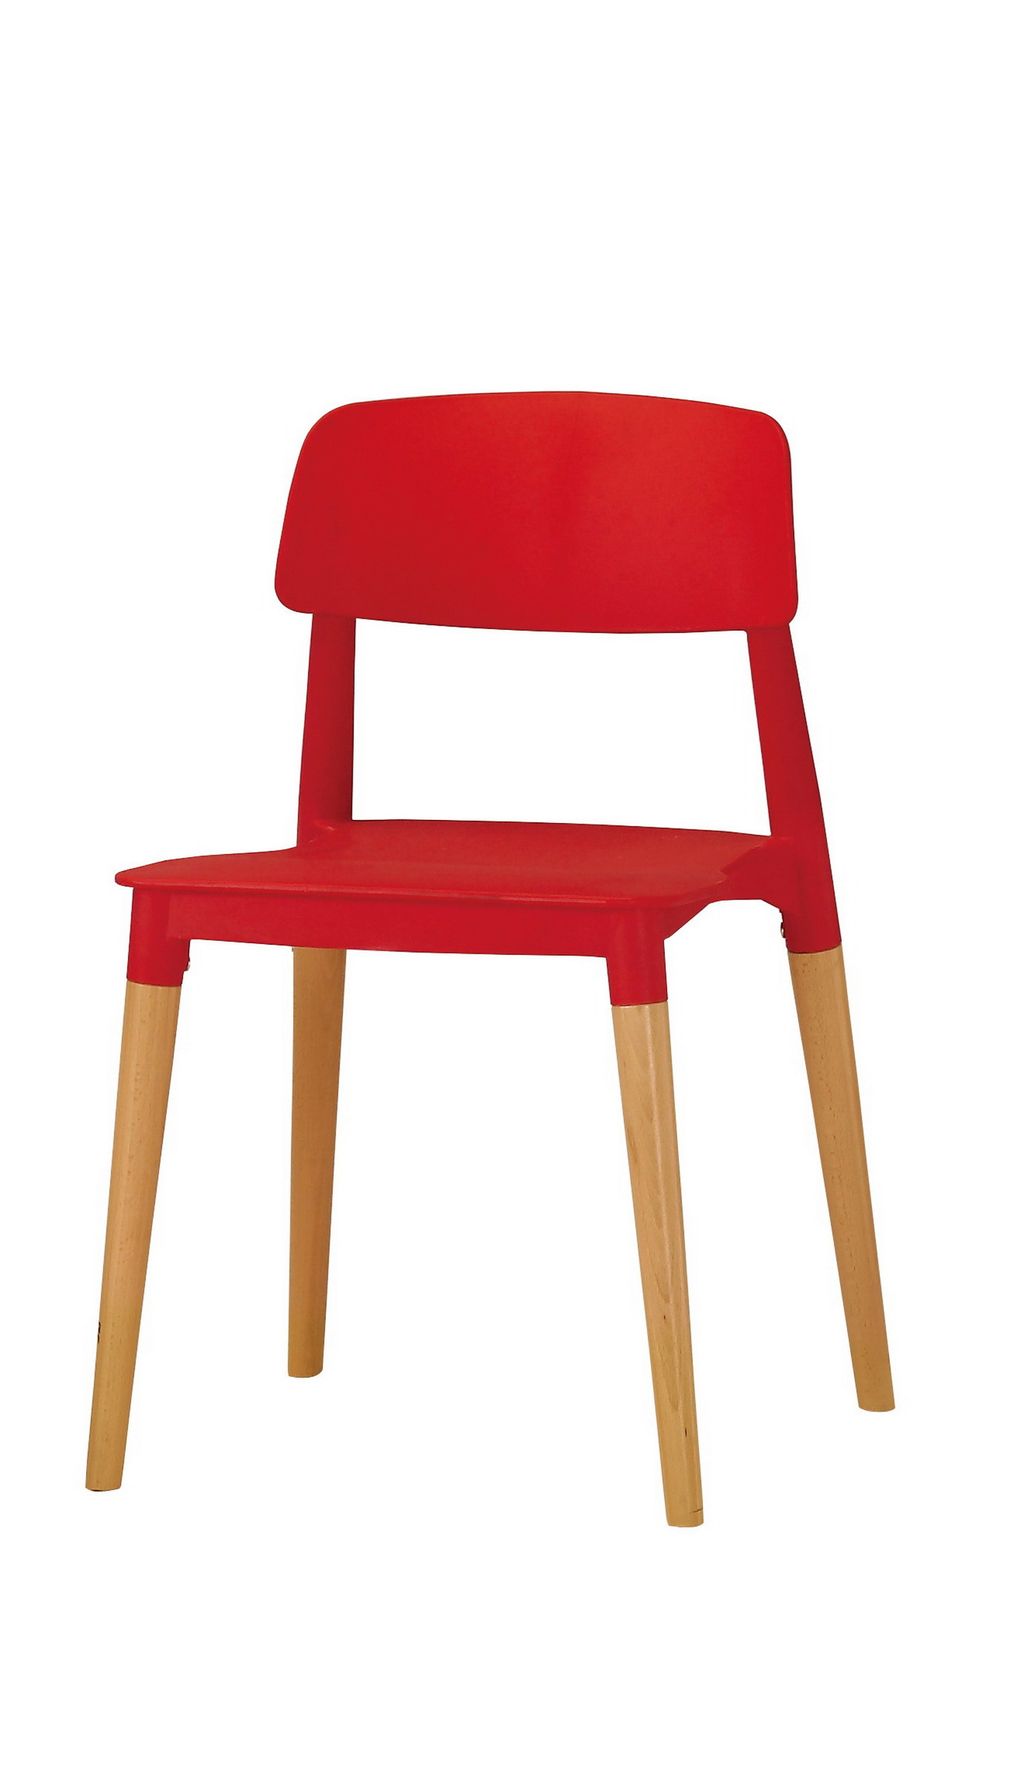 522-8 奧斯本造型椅(紅).jpg